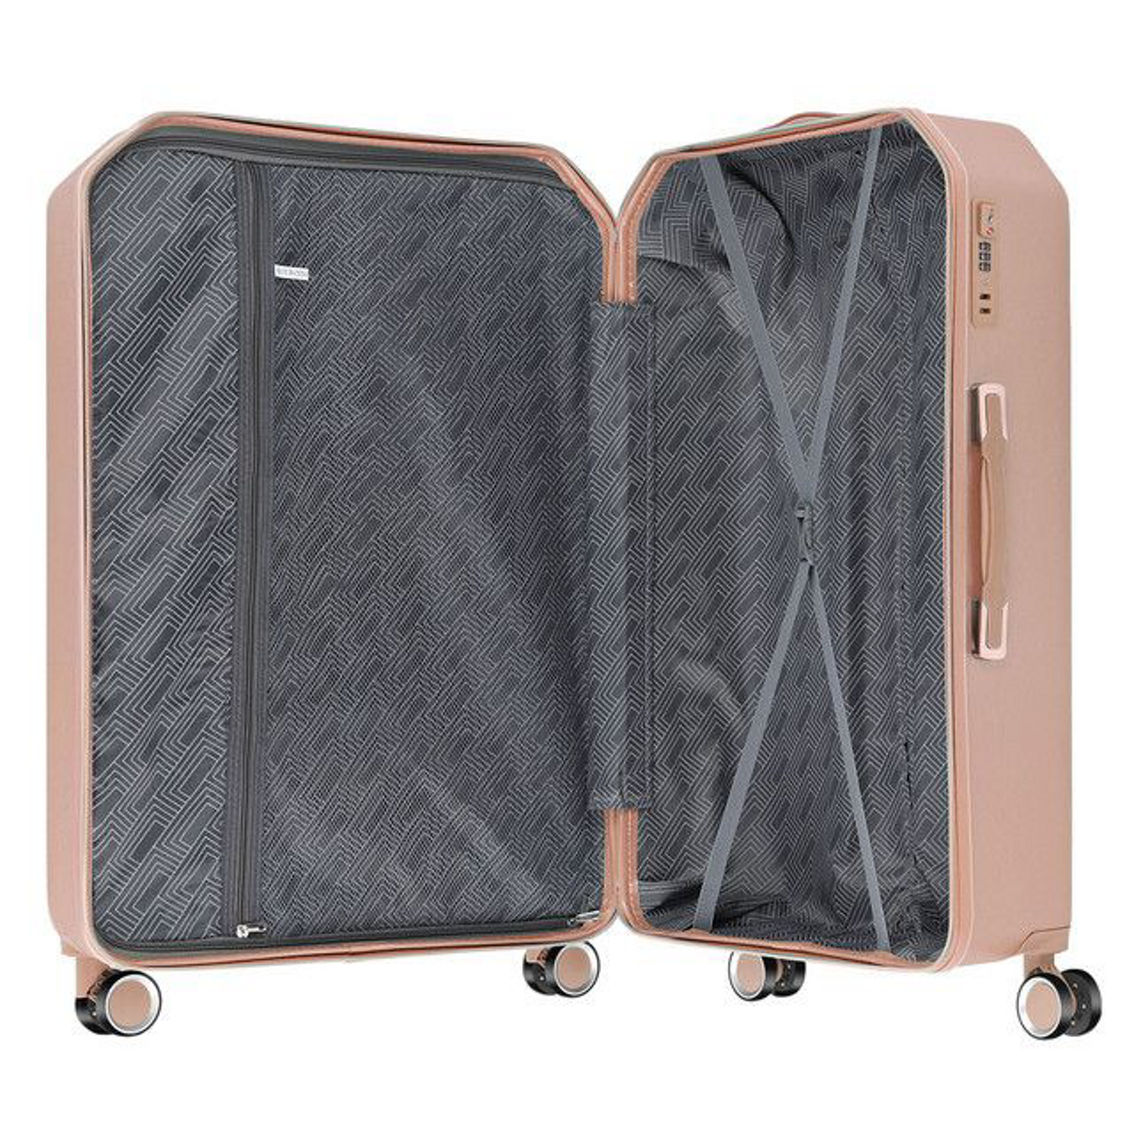 Hikolayae Denim Collection Hardside Luggage 3 Piece set - Image 5 of 5